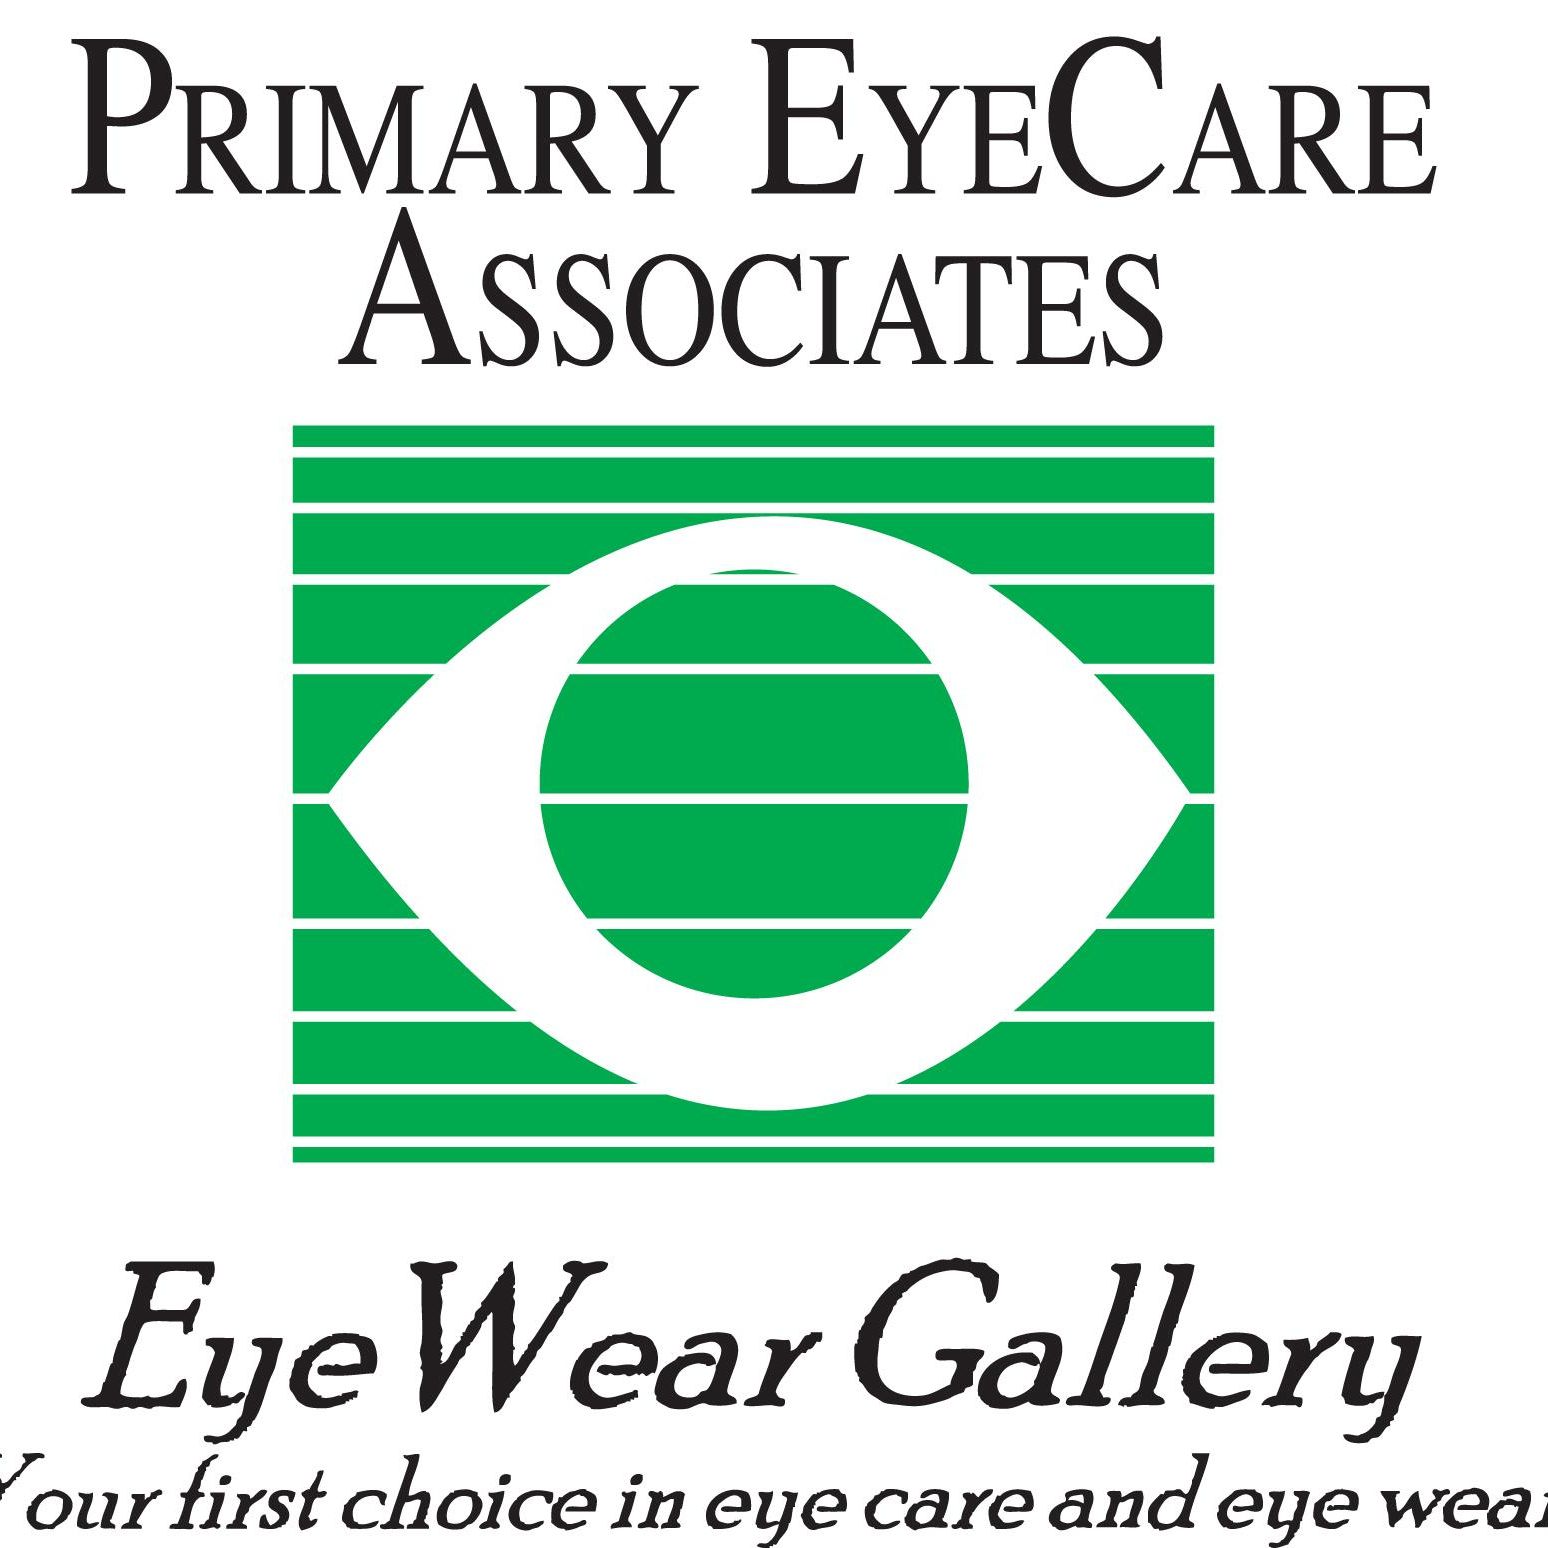 Primary Eyecare Associates